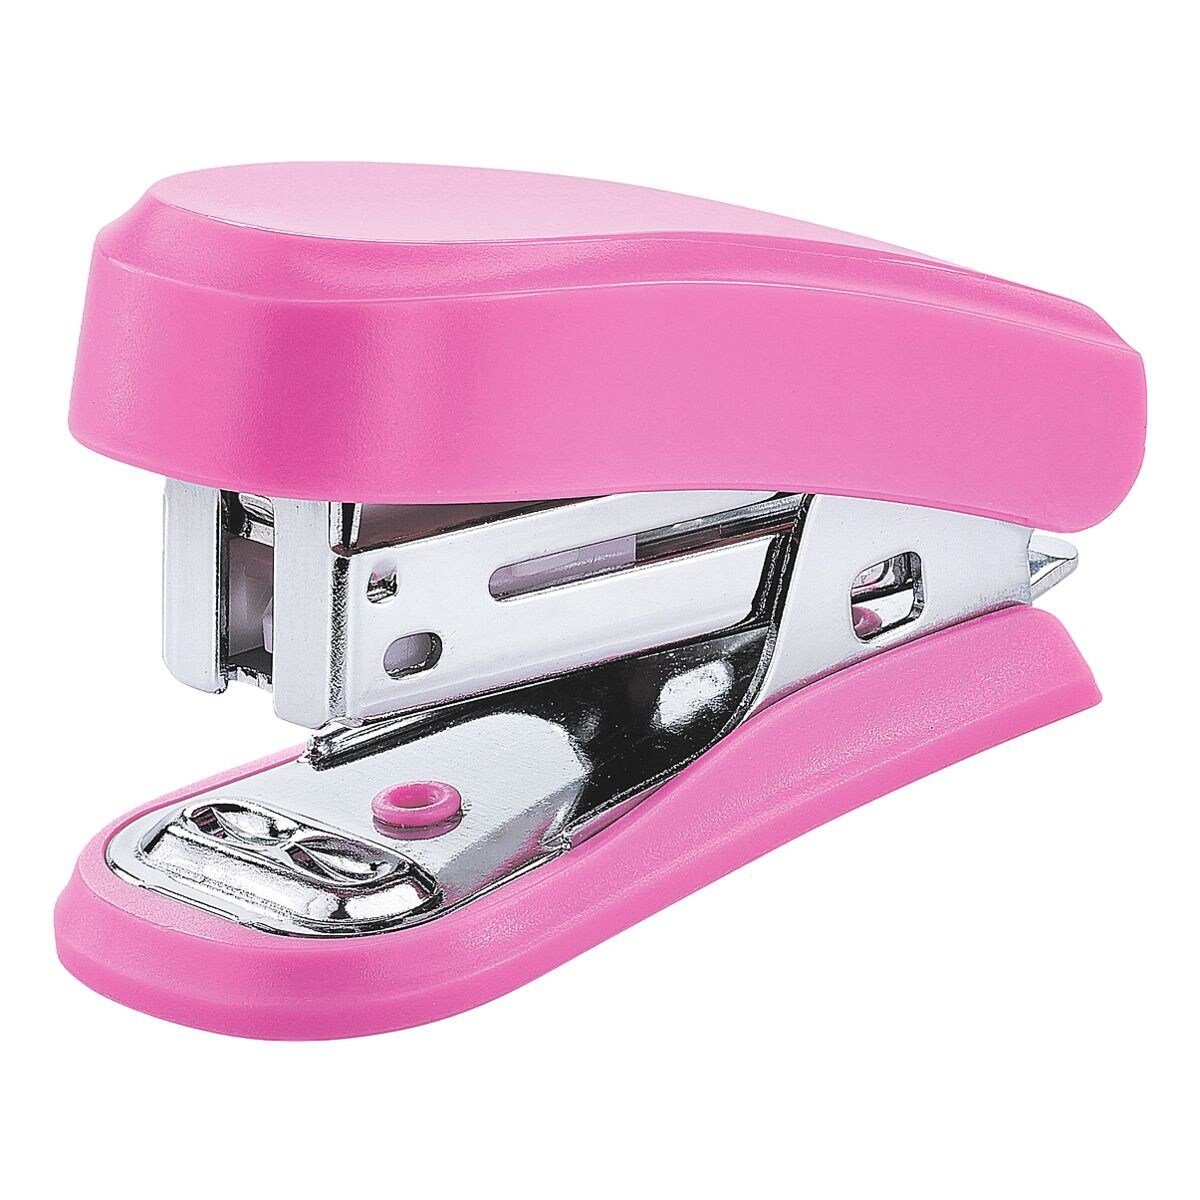 NOVUS Heftgerät mit Klammerentferner integriertem pink Mini